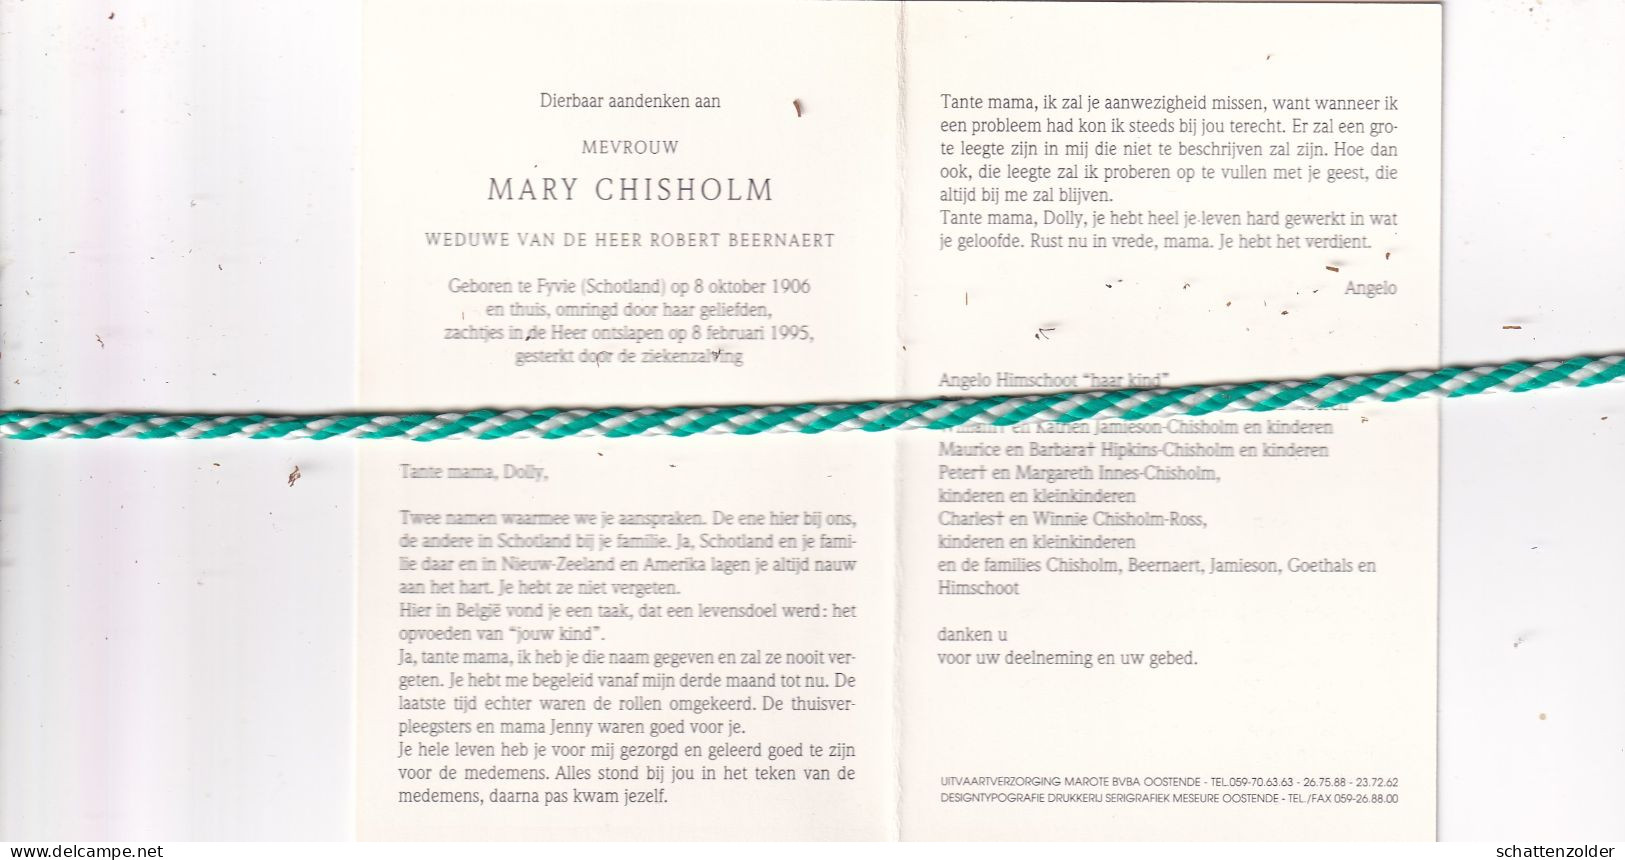 Marie Chisholm-Beernaert, Fyvie (Schotland) 1906, 1995. Foto - Overlijden